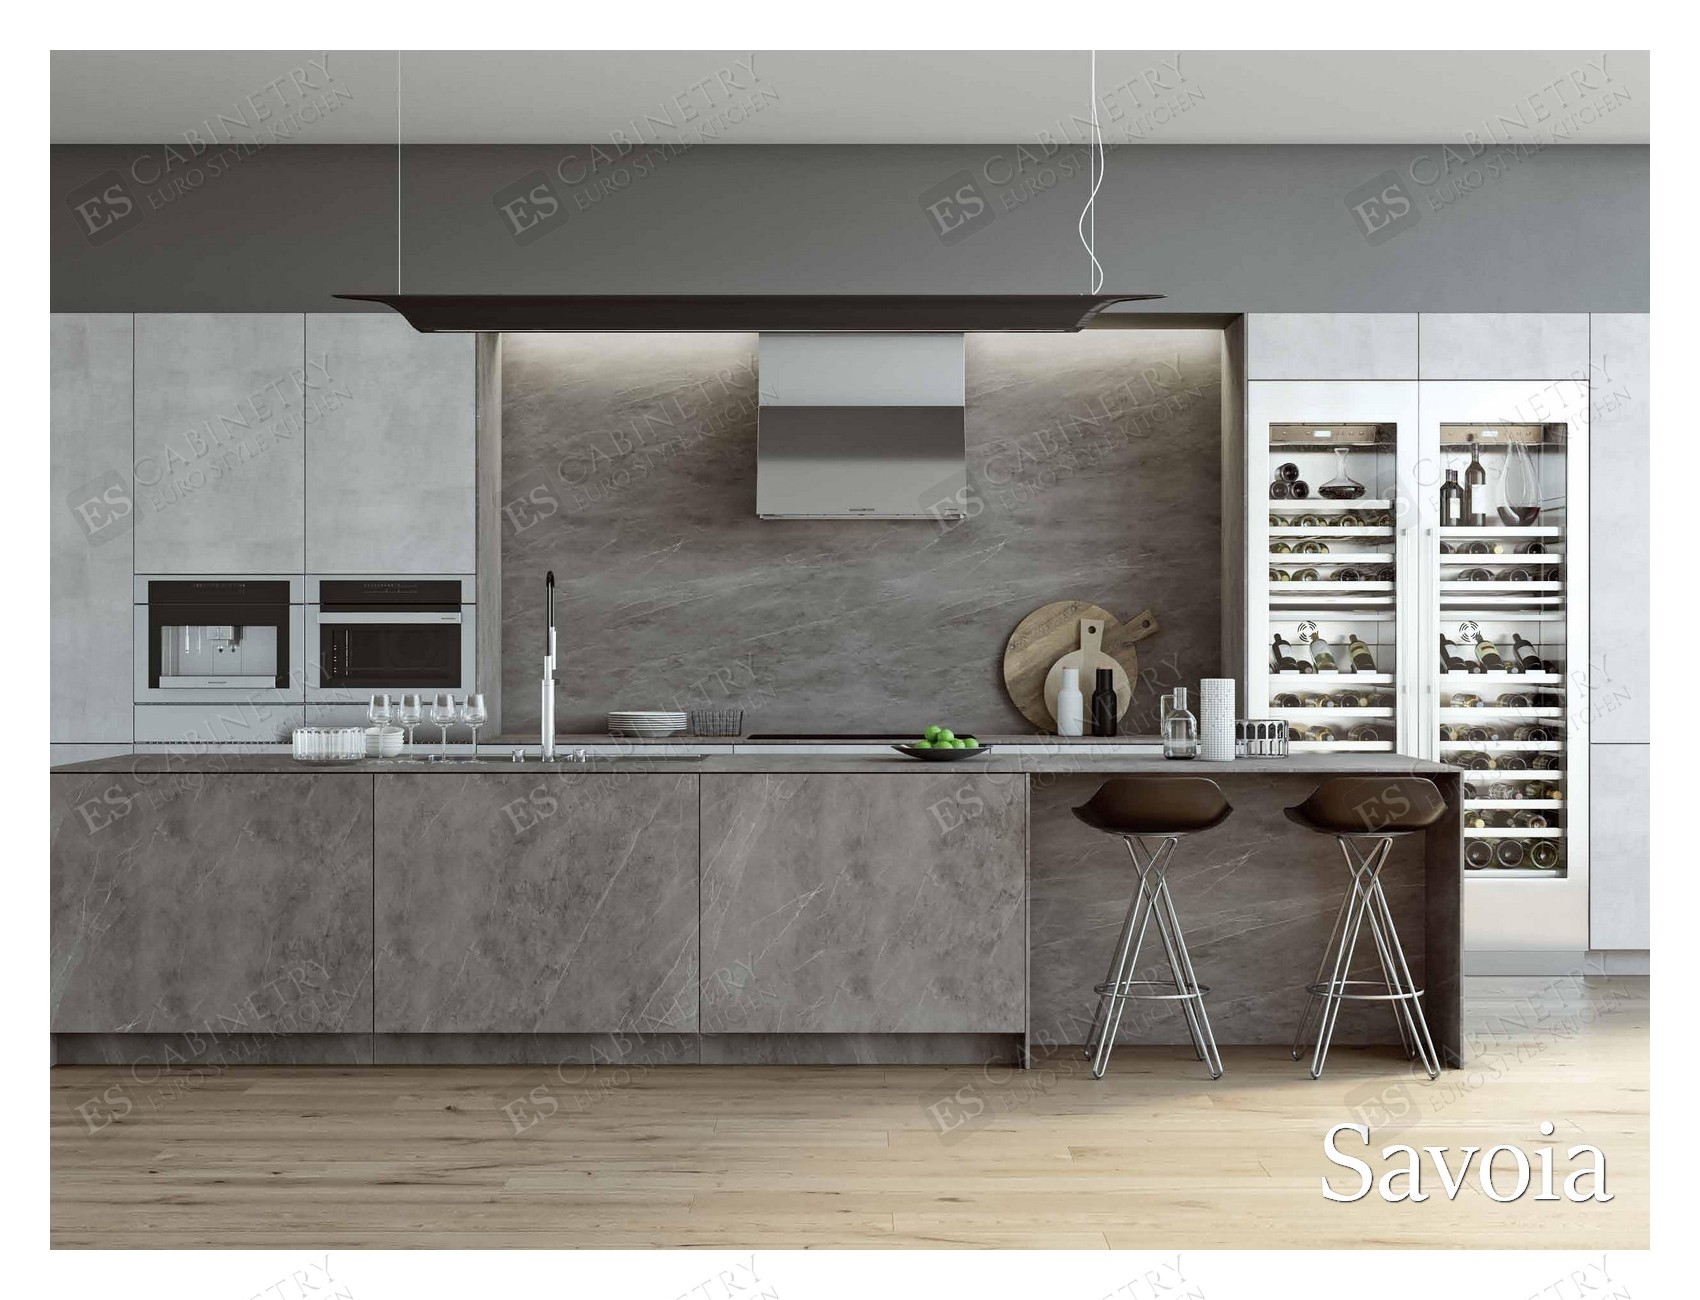 Savoia | Euro cabinet design